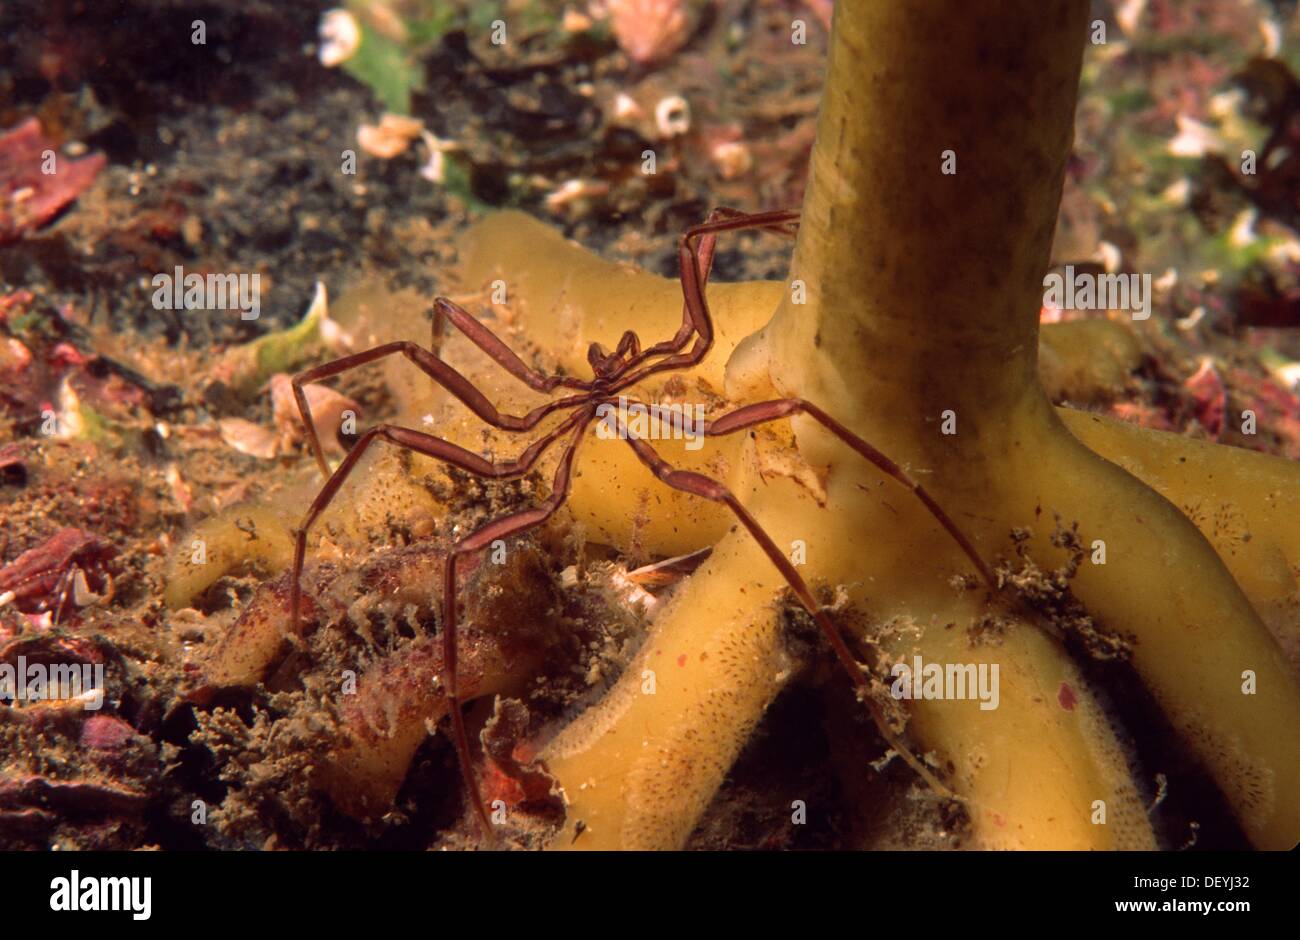 Pycnogonida, Sea Spider (Nymphon gracile), Eastern Atlantic, Galicia, Spain Stock Photo